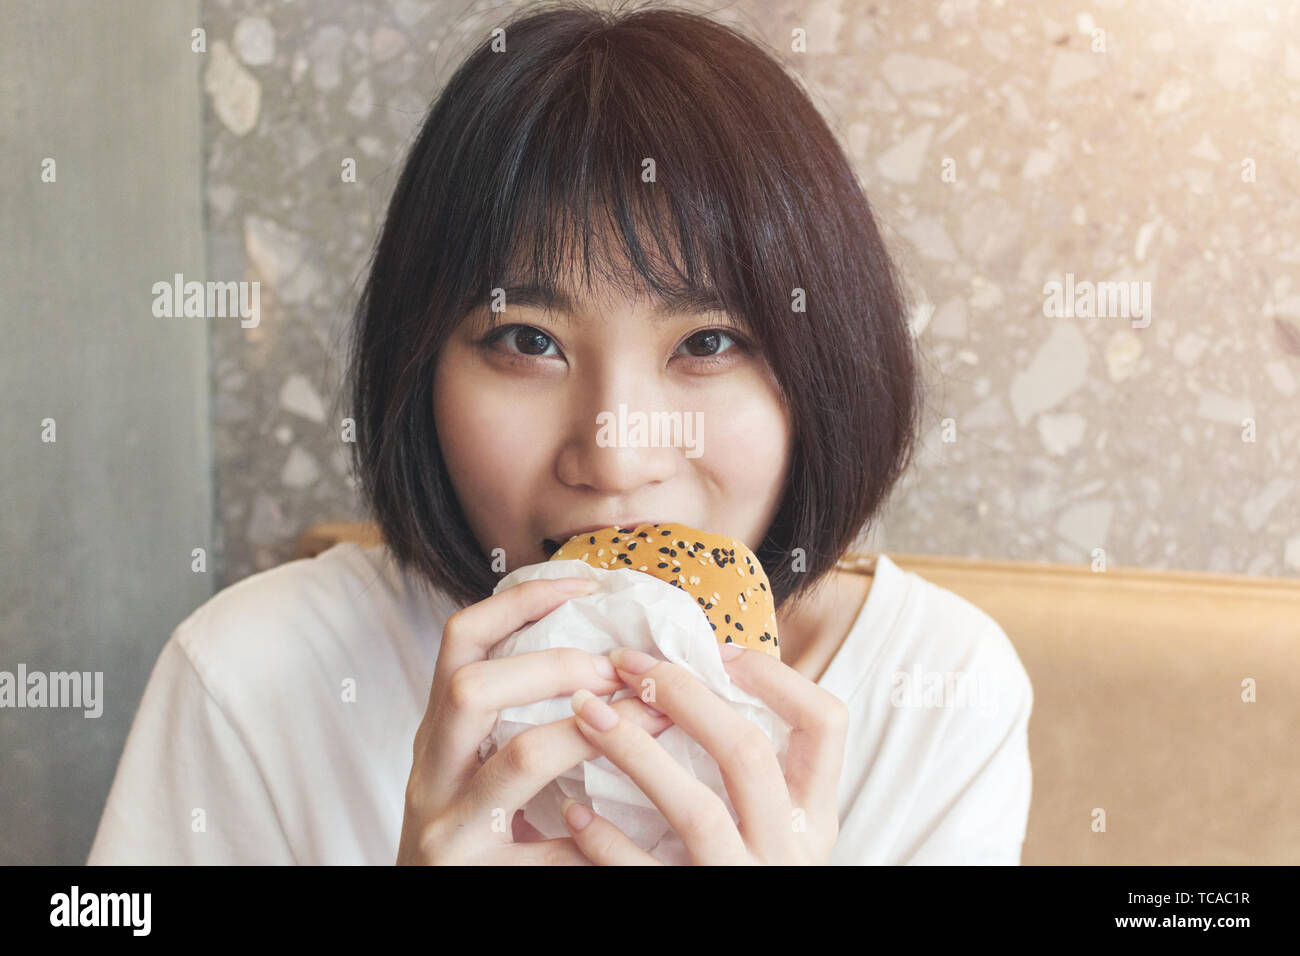 Close-up of girl biting hamburger Banque D'Images